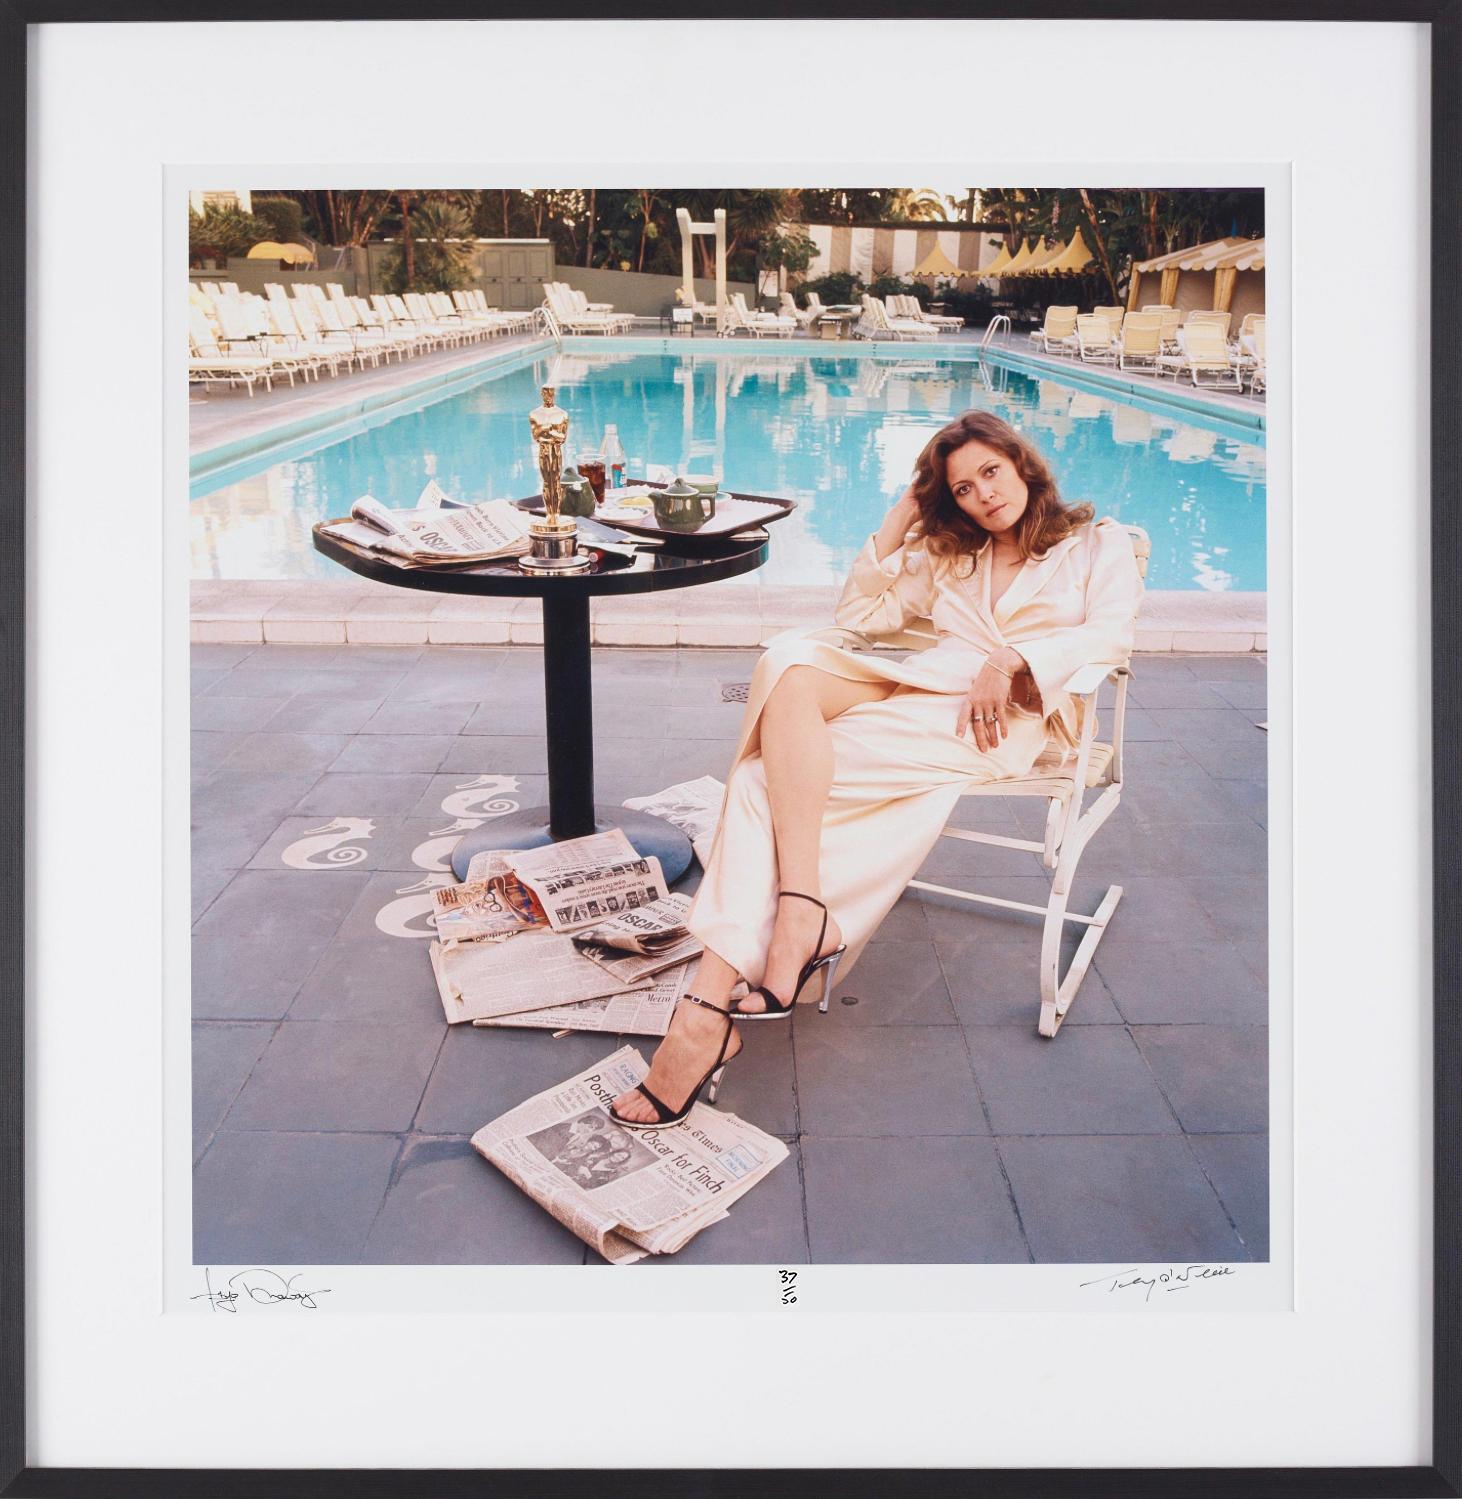 Faye Dunaway, „The Morning After“, 1977  

Signierter Druck von Terry O'Neill und Faye Dunaway

Neuwertiger Zustand C Druck handnummeriert 37 / 50 
und sowohl vom Fotografen als auch vom Filmstar handsigniert.


Gerahmt in schwarzem Massivholzrahmen